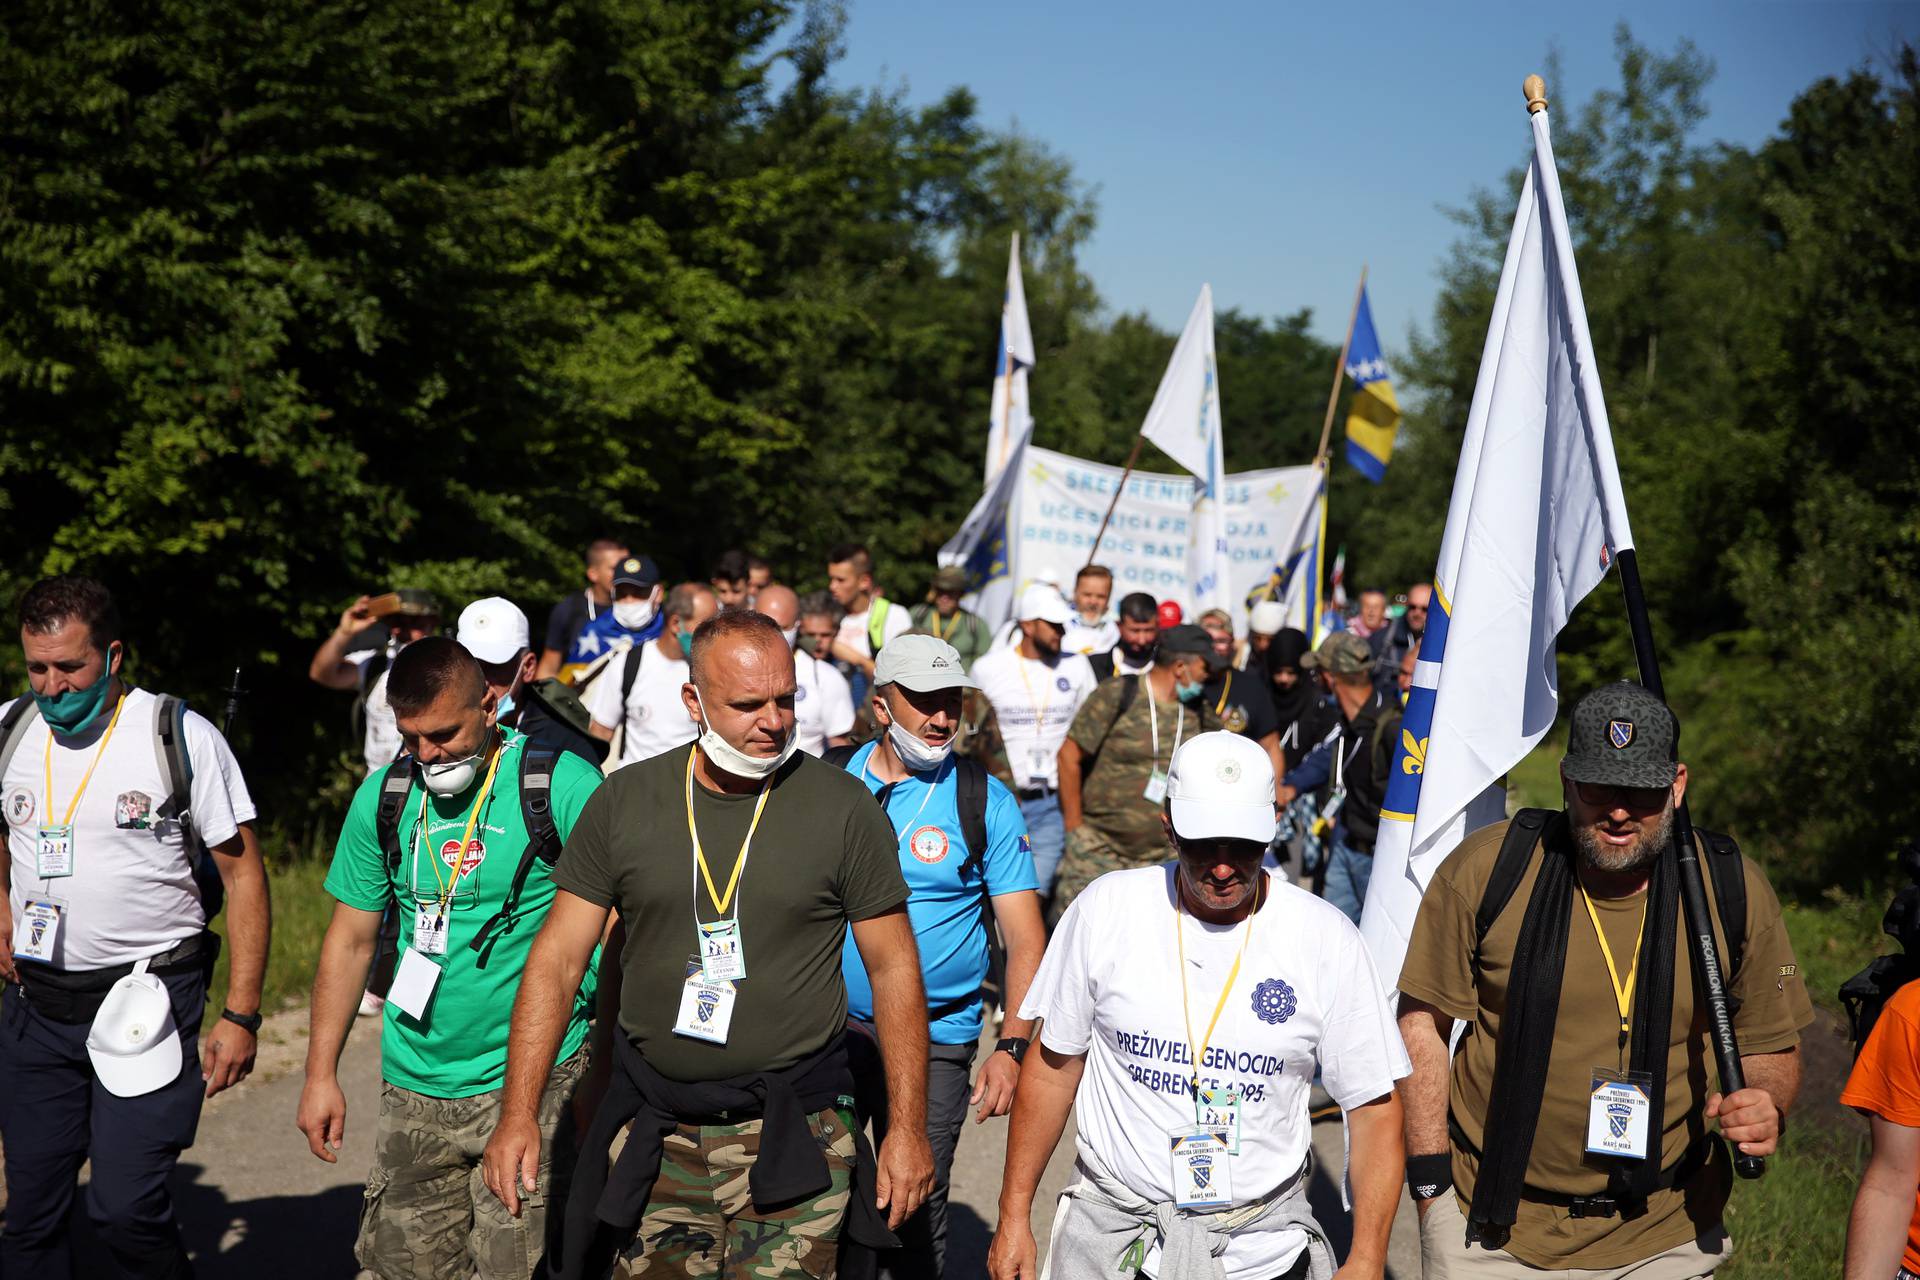 March commemorating the 25th anniversary of the Srebrenica massacre